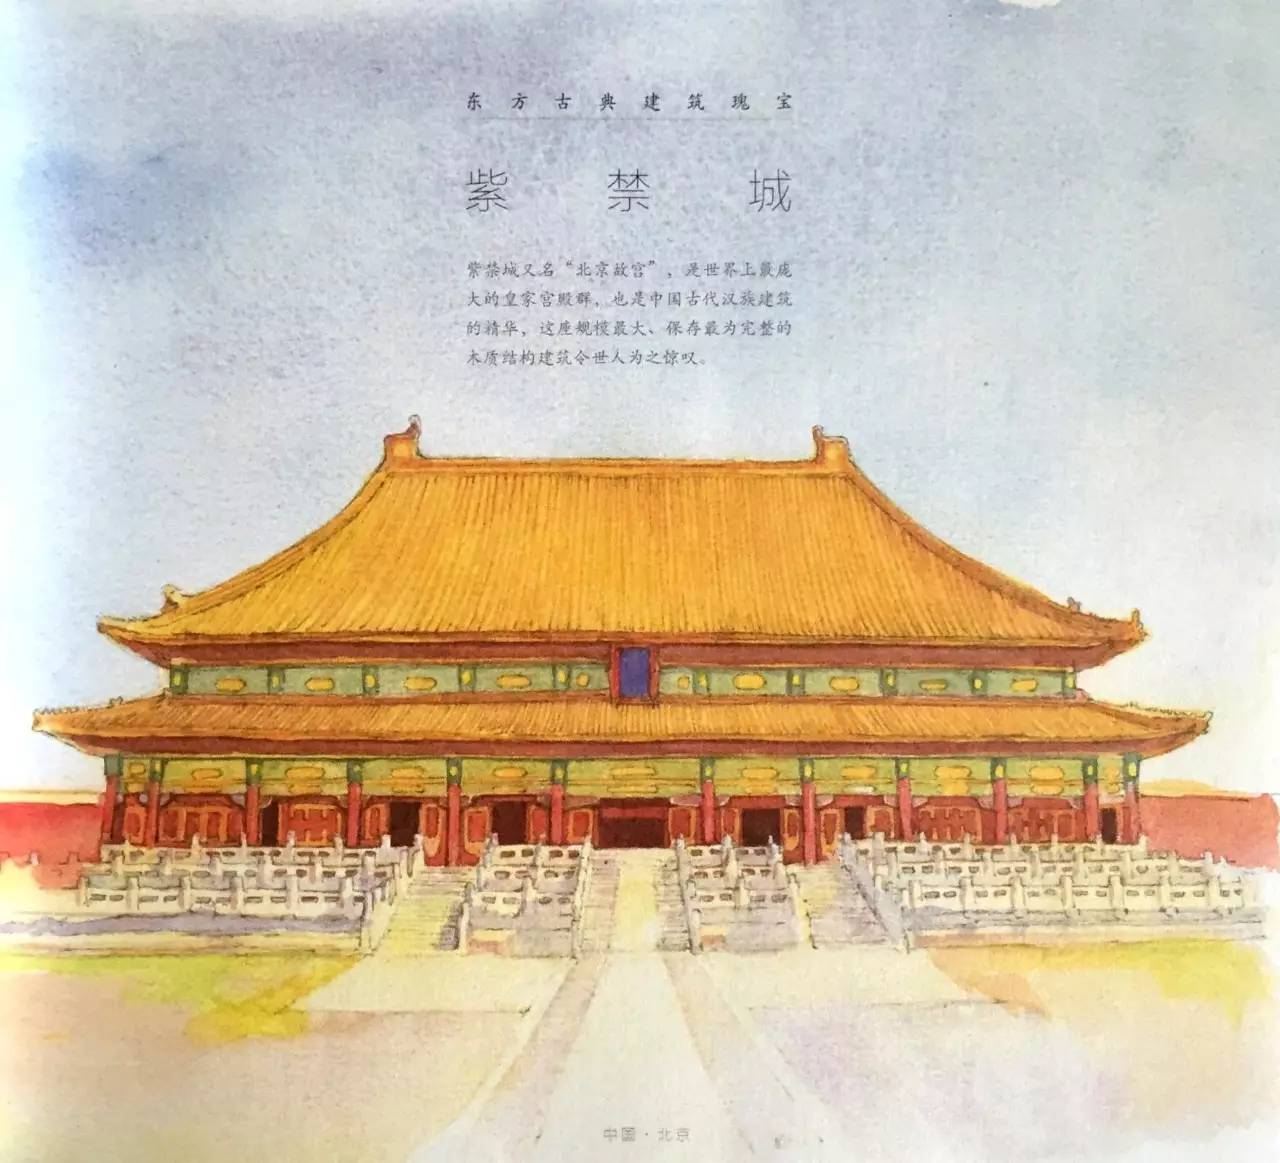 紫禁城又名"北京故宫",是世界上最庞大的皇家宫殿群,也是中国古代